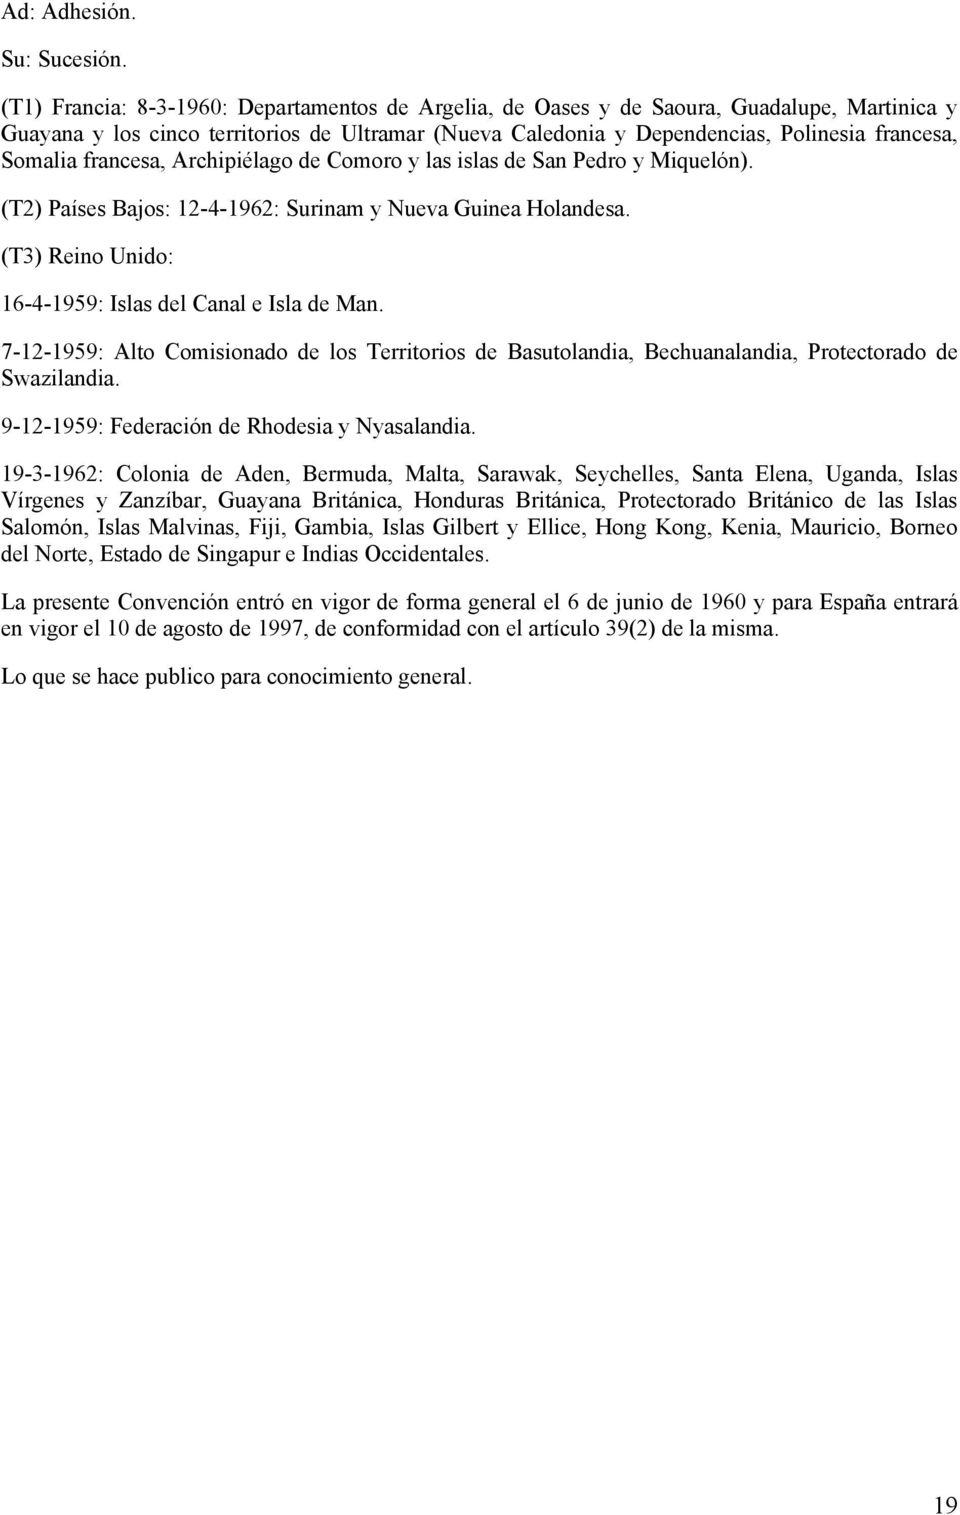 francesa, Archipiélago de Comoro y las islas de San Pedro y Miquelón). (T2) Países Bajos: 12-4-1962: Surinam y Nueva Guinea Holandesa. (T3) Reino Unido: 16-4-1959: Islas del Canal e Isla de Man.